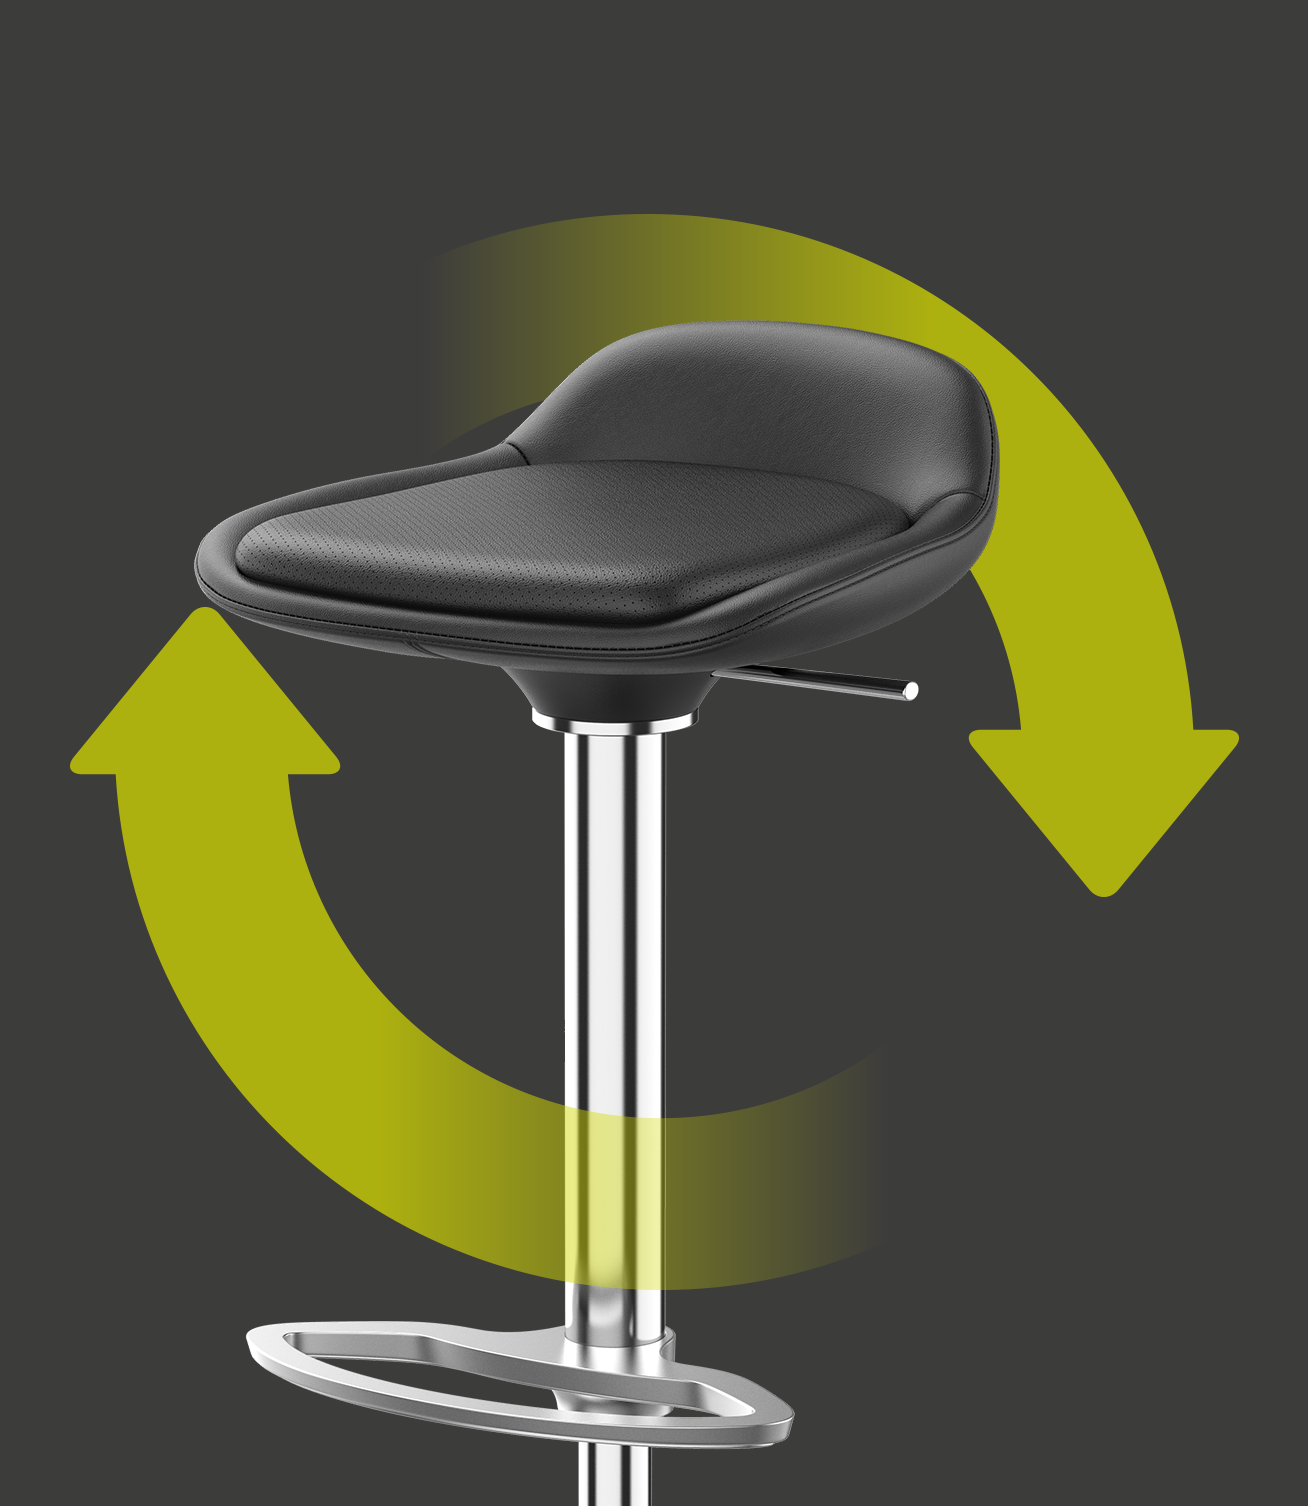 Den elegante barstol LIME med sæde- og rygbetræk af sort læder samt forkromet stel og med to grønne pile, der danner en cirkel omkring barstolen. Det henviser til stolens bæredygtighed og genanvendelighed | by studiokurbos